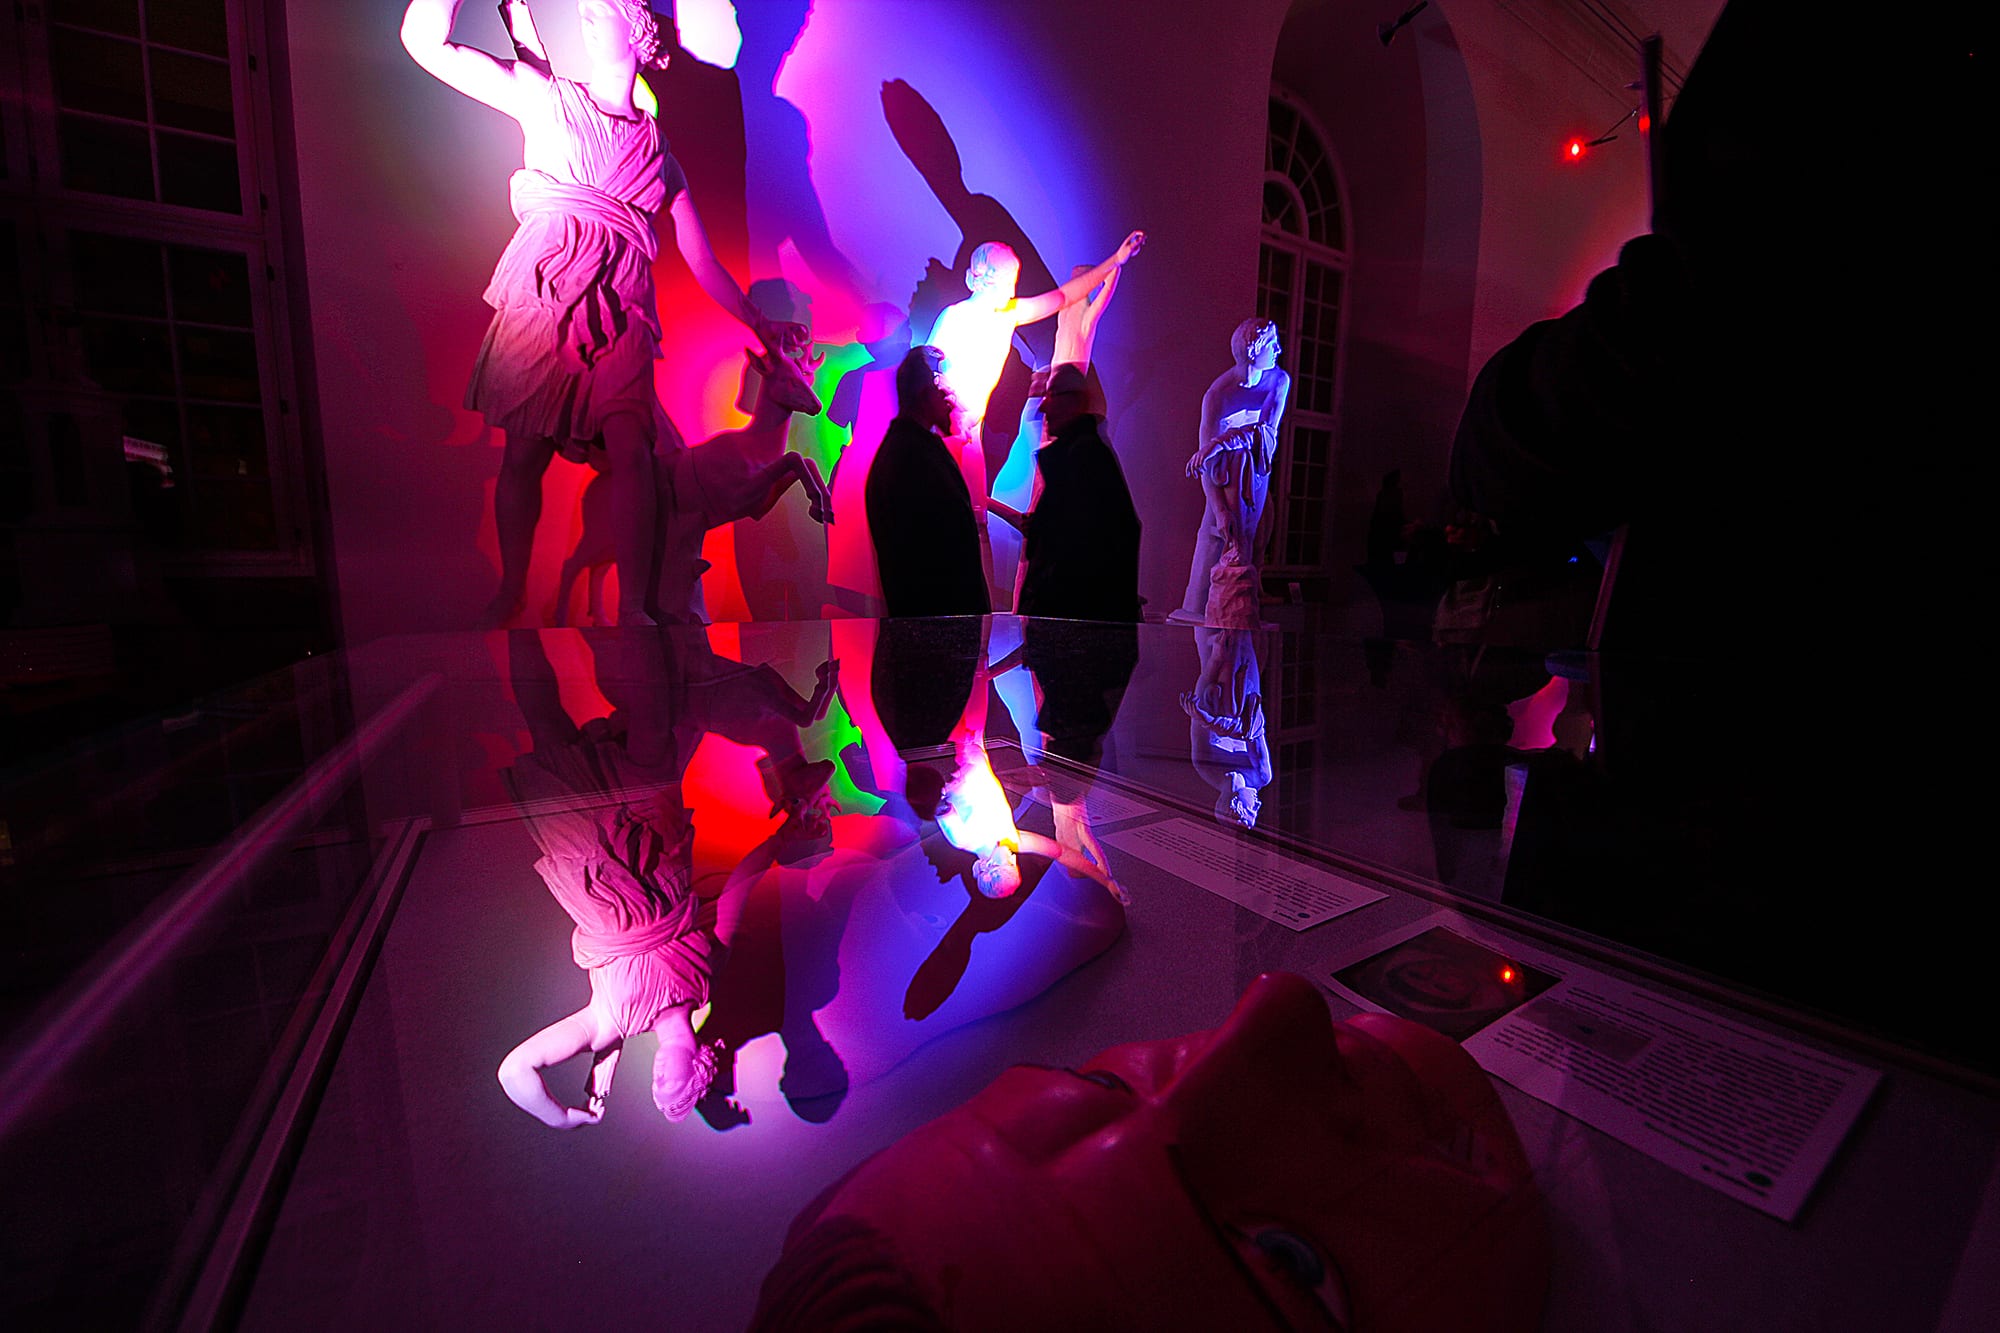 Impressionen von der Vernissage der Installation "Licht der Götter" von Serge Le Goff.